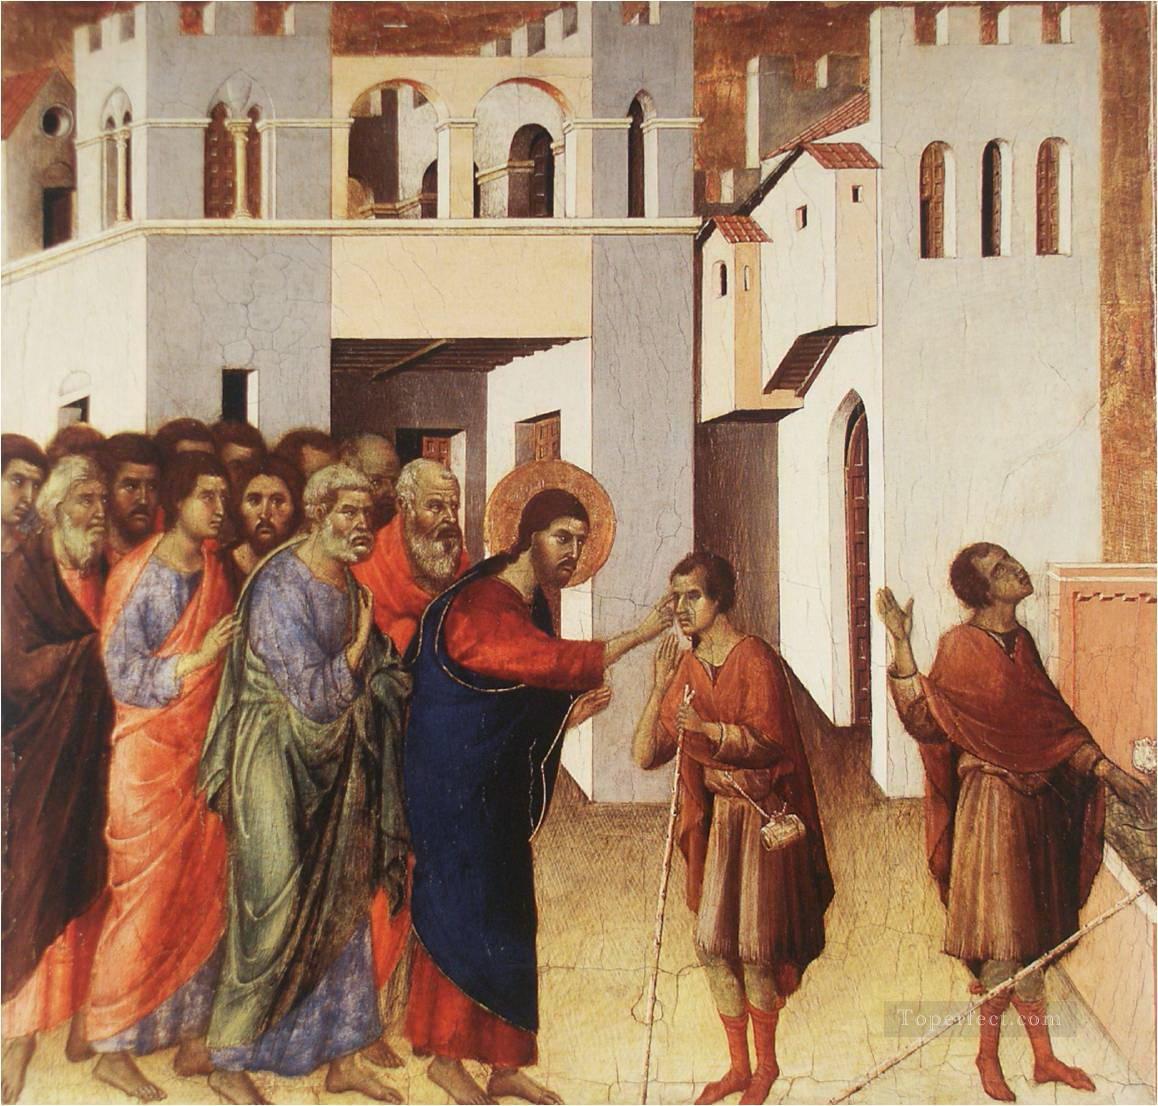 Duccio: Christ Healing a Blind Man